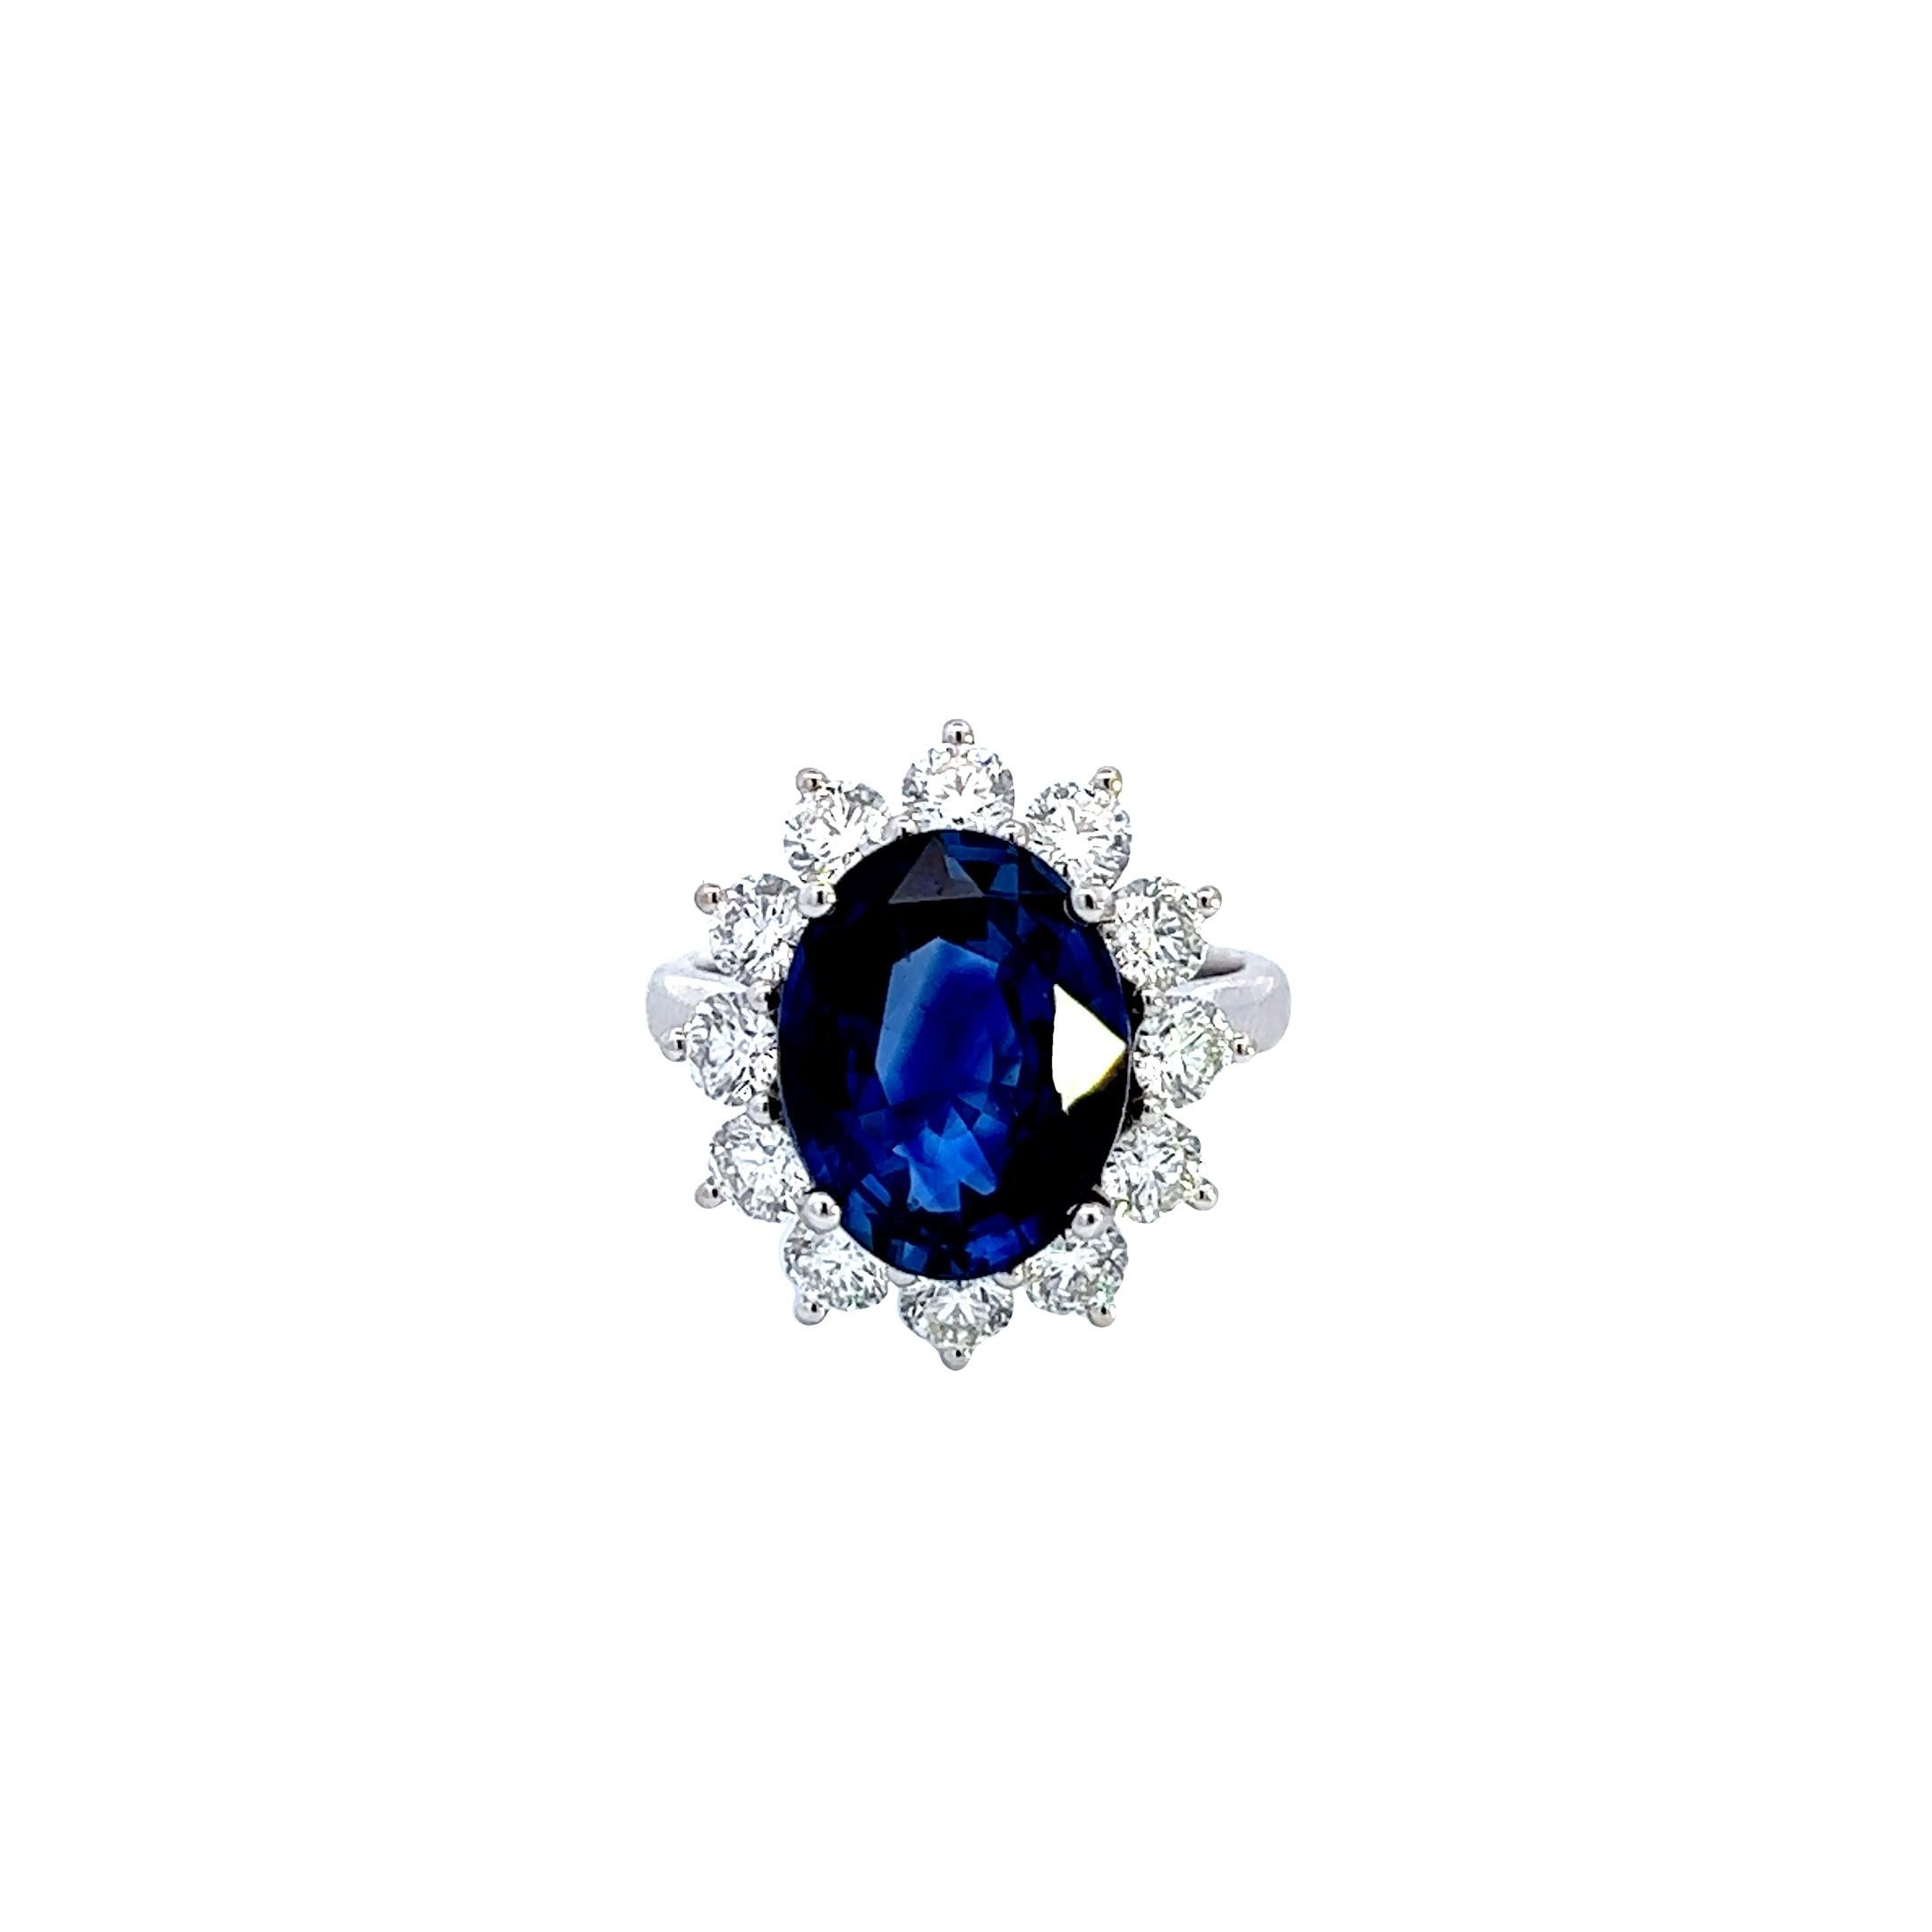 Women's or Men's Beauty 18k White Gold Ceylon Sapphire Ring, 6.46ct, Christian Dunaigre Certified For Sale